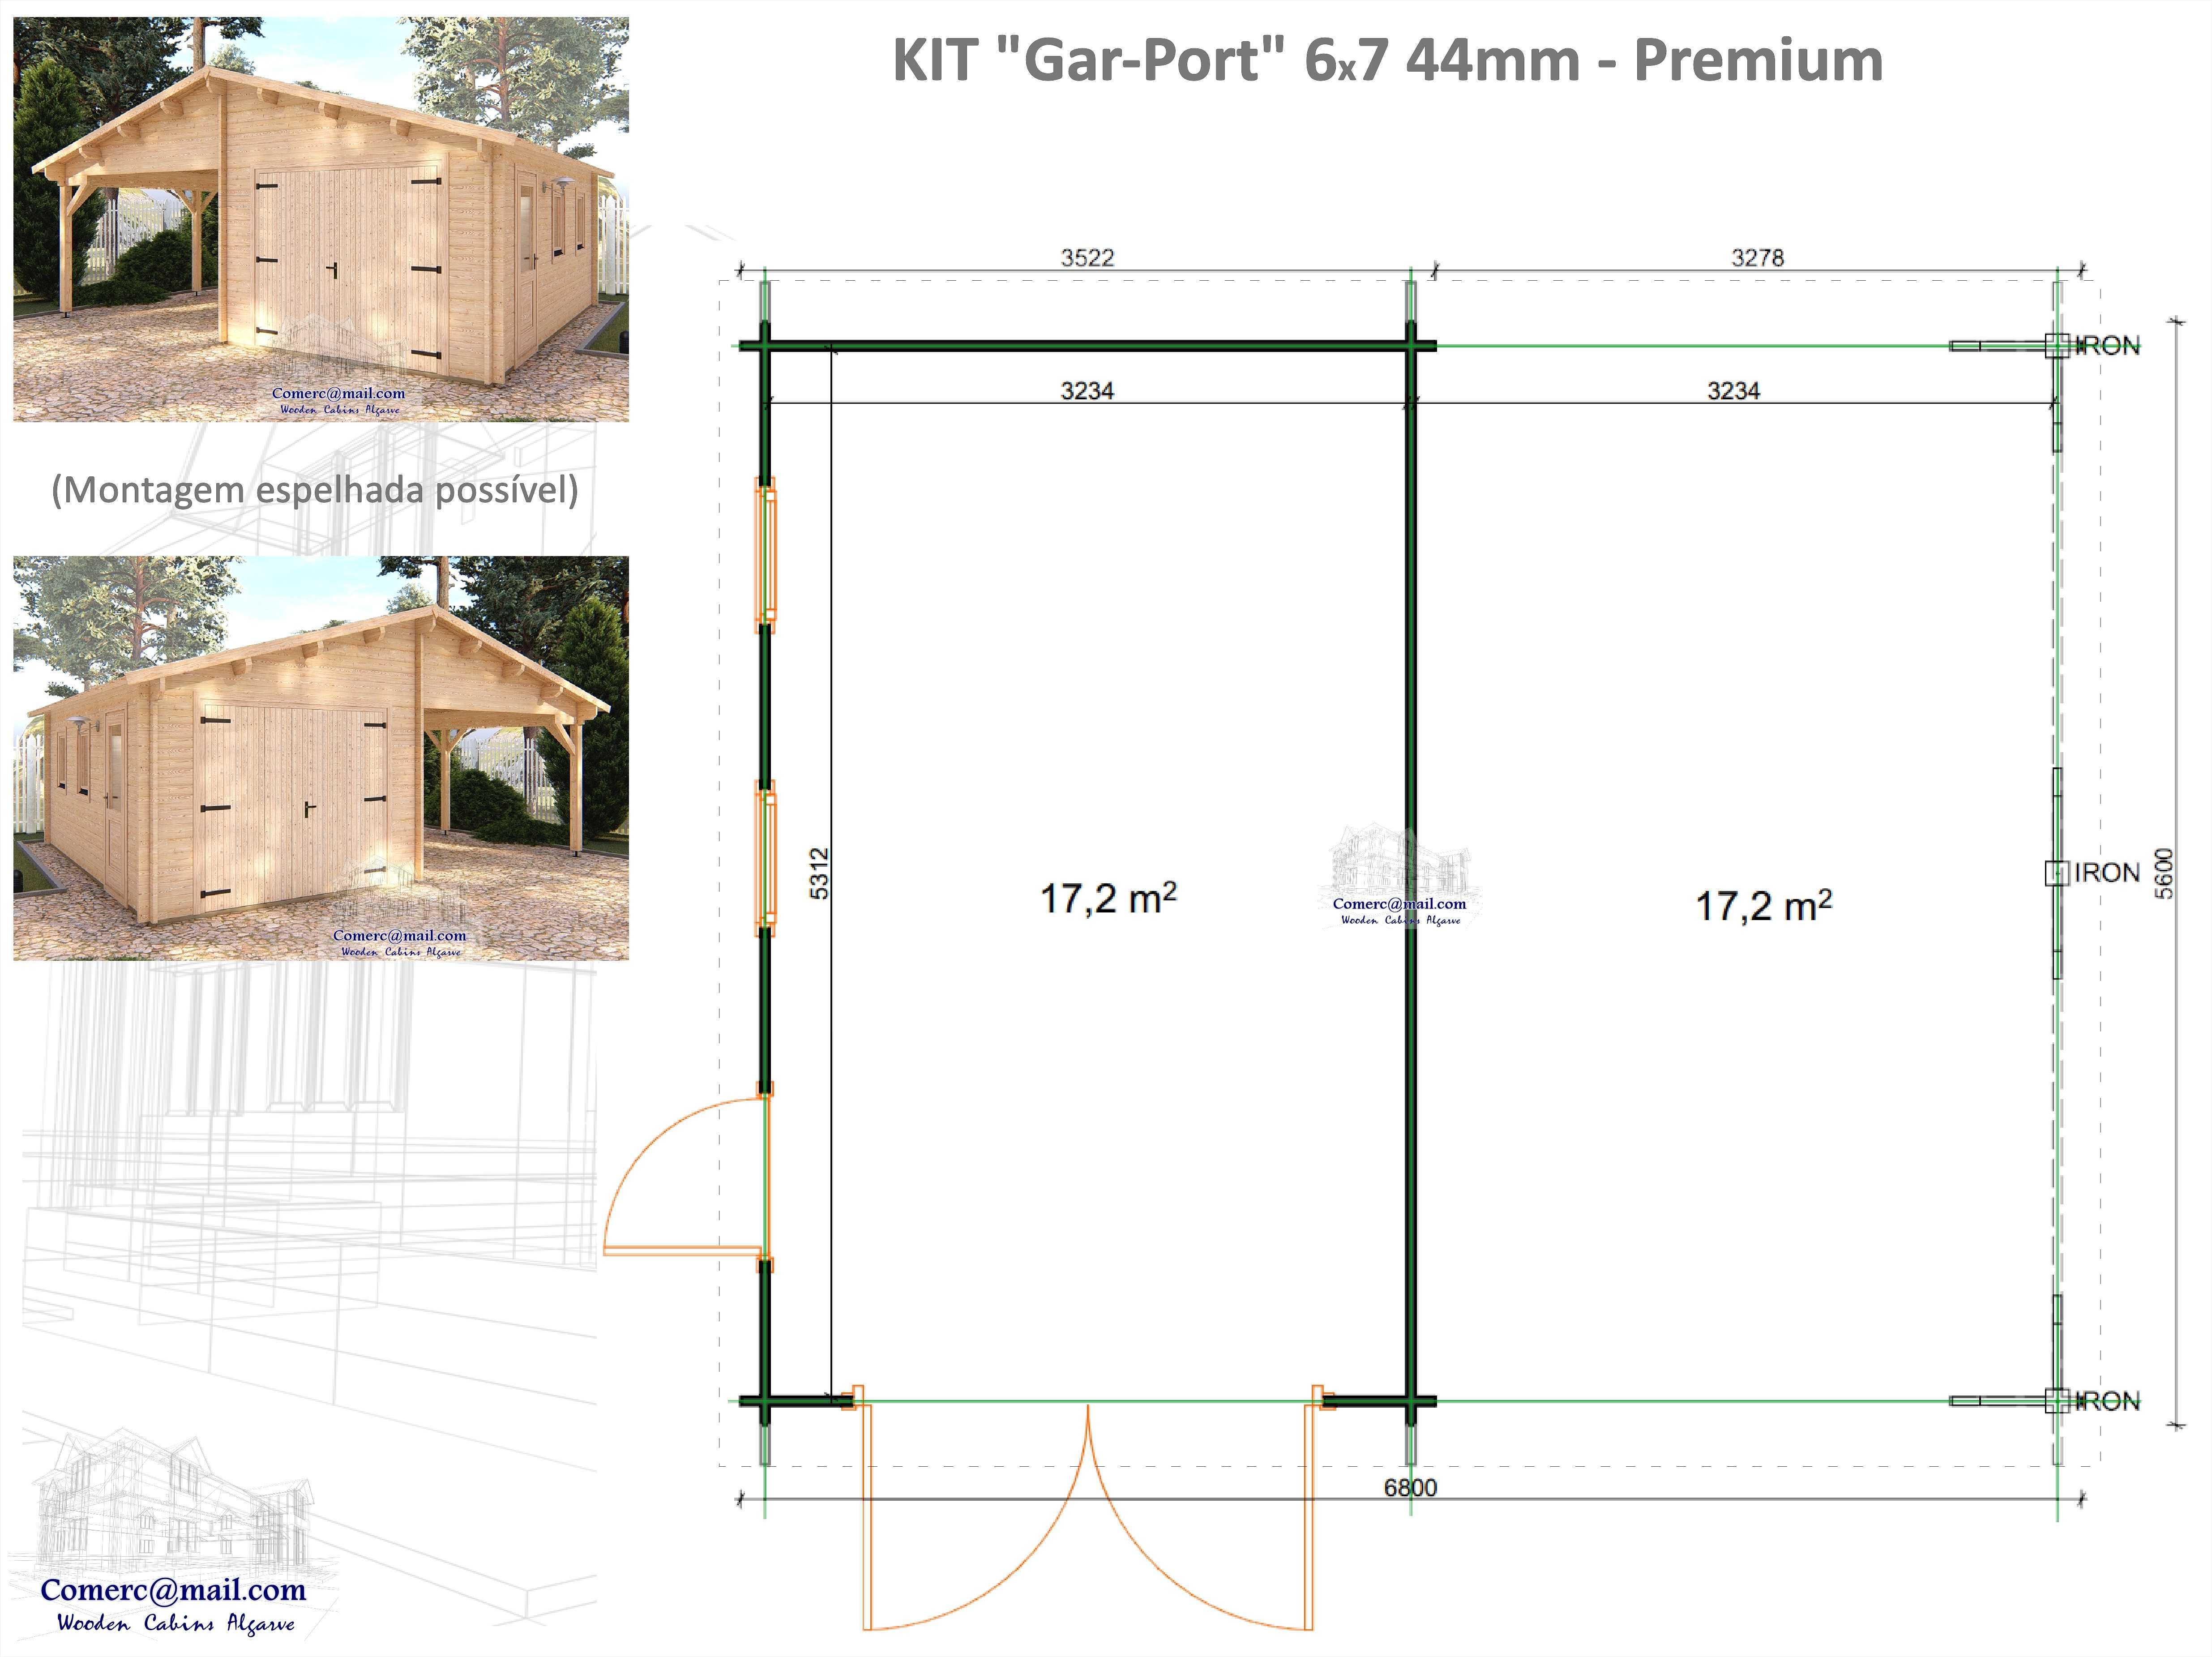 KIT Garagem "Gar-Port" 44 - Teto 44.4m² - 2x 17.2 m²  ;-)